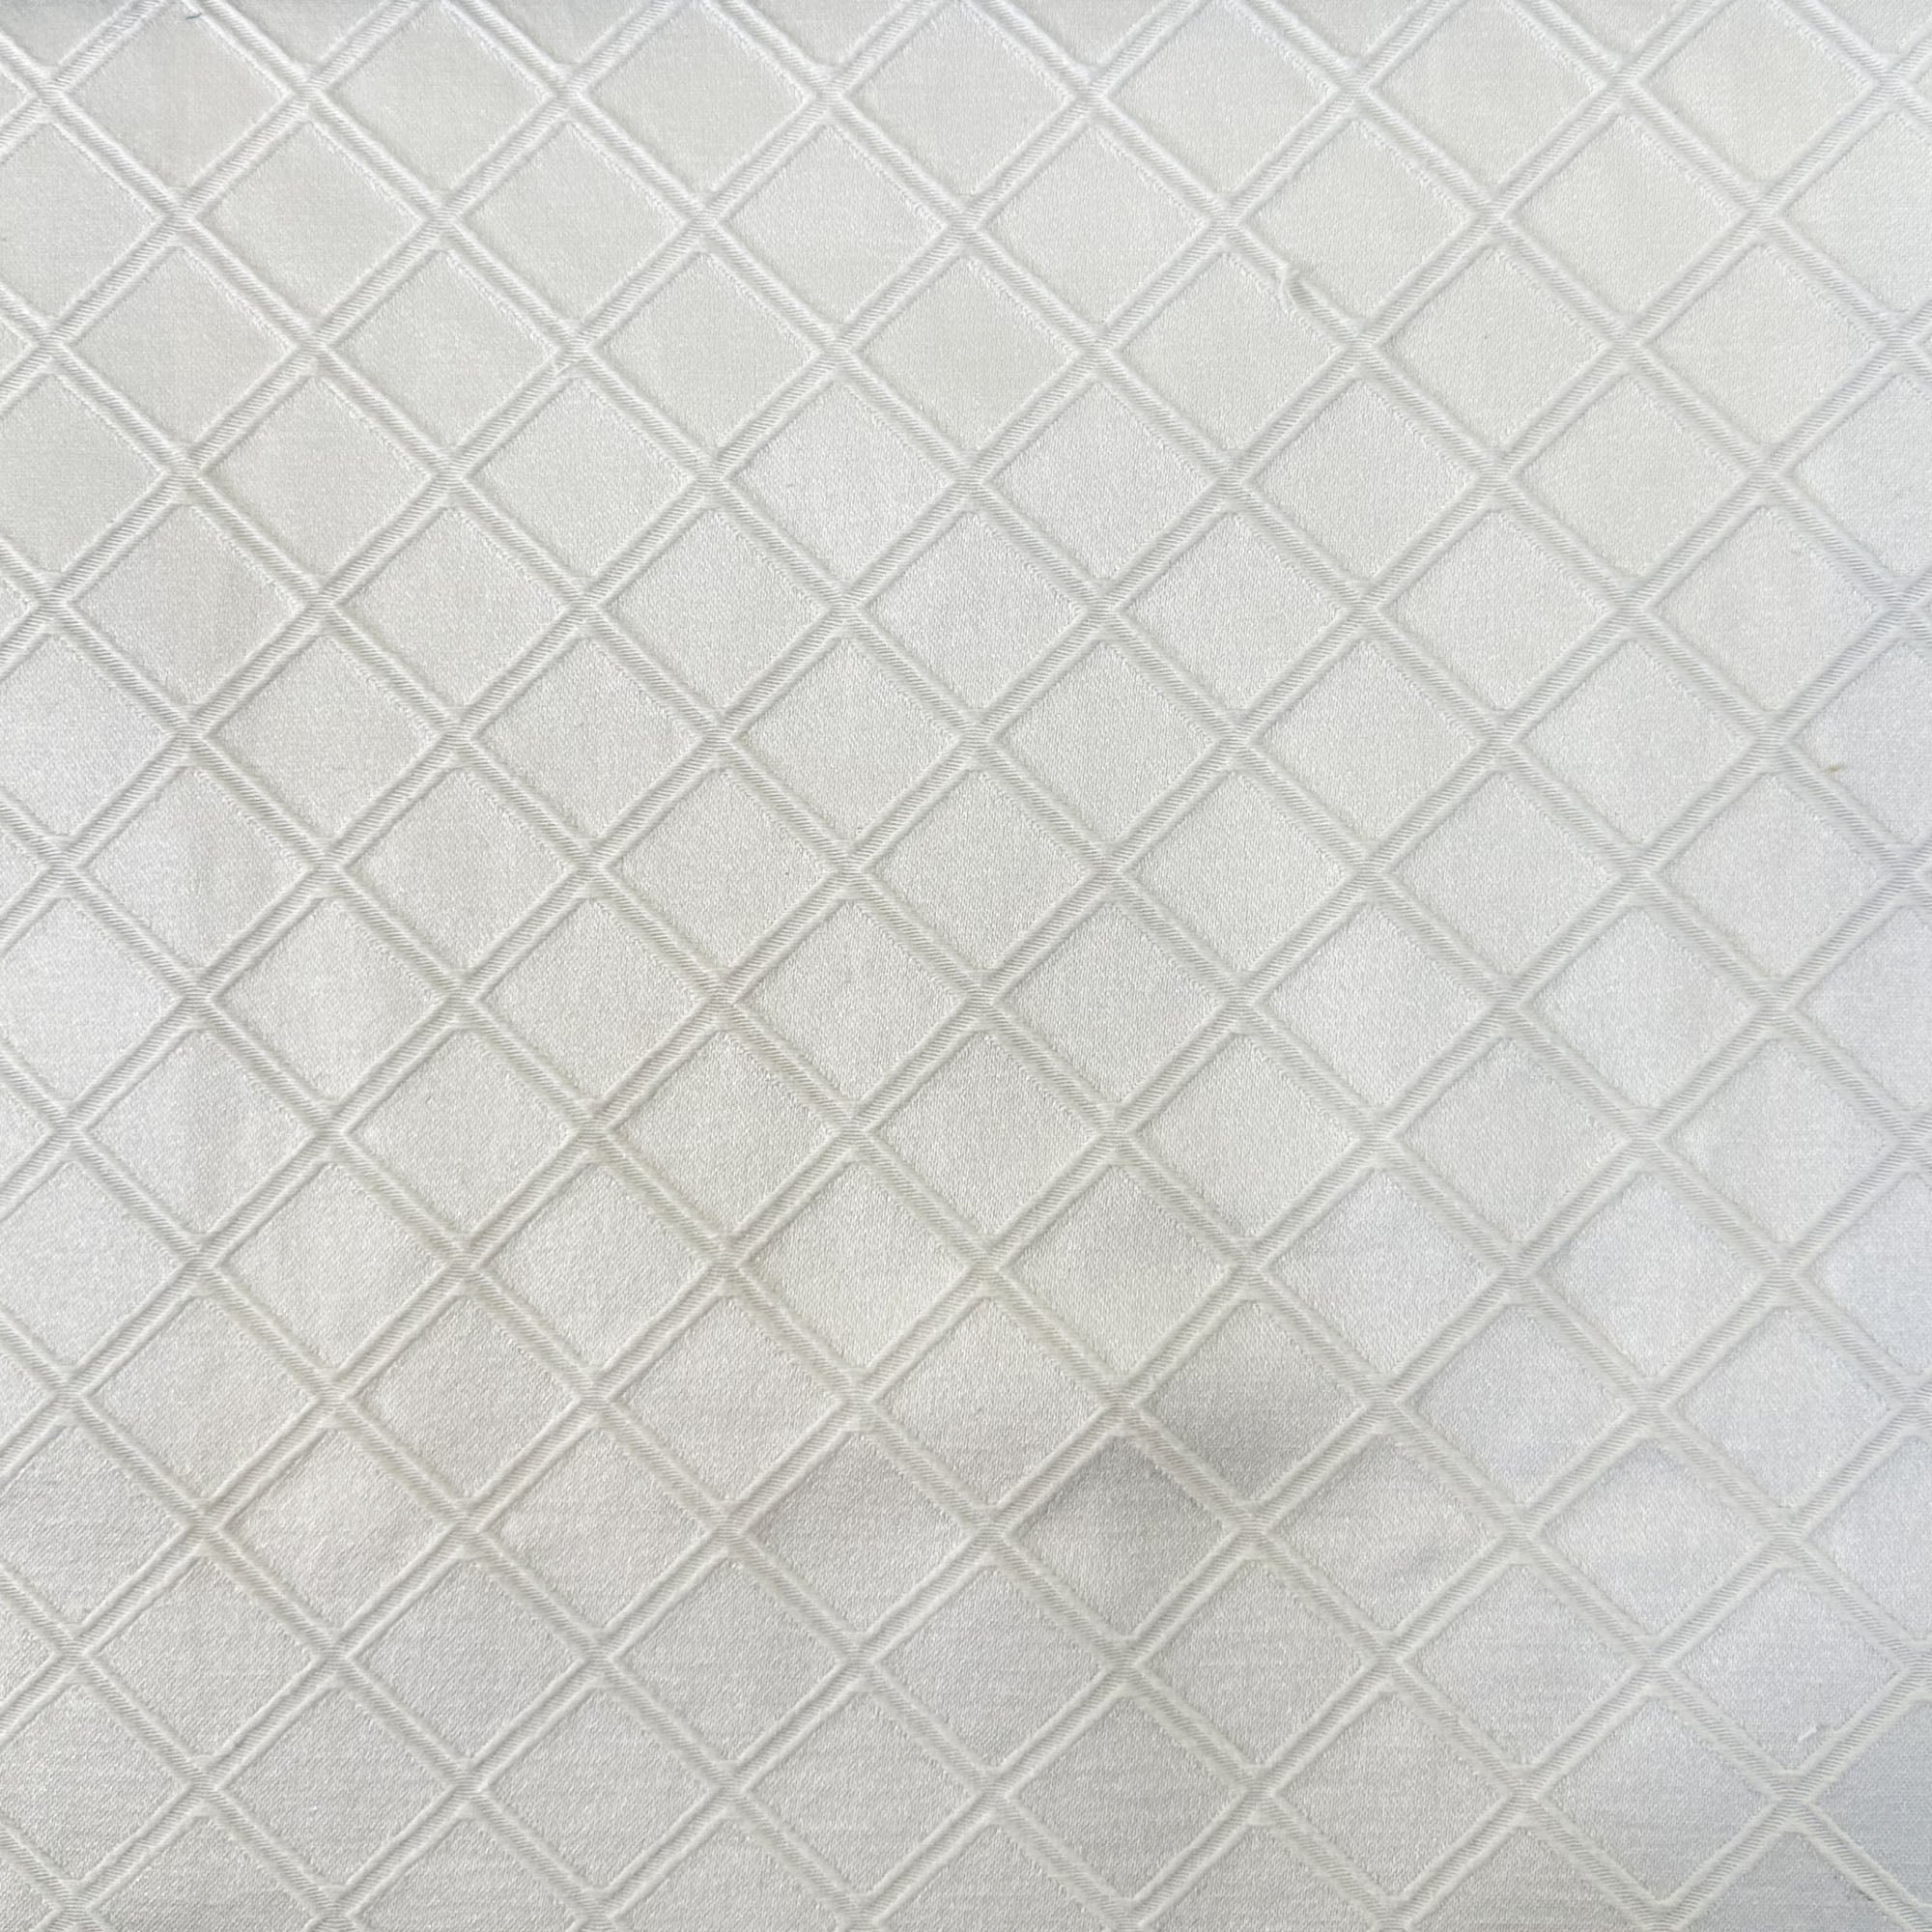 Vecta Fabric | Embossed Diamond Design